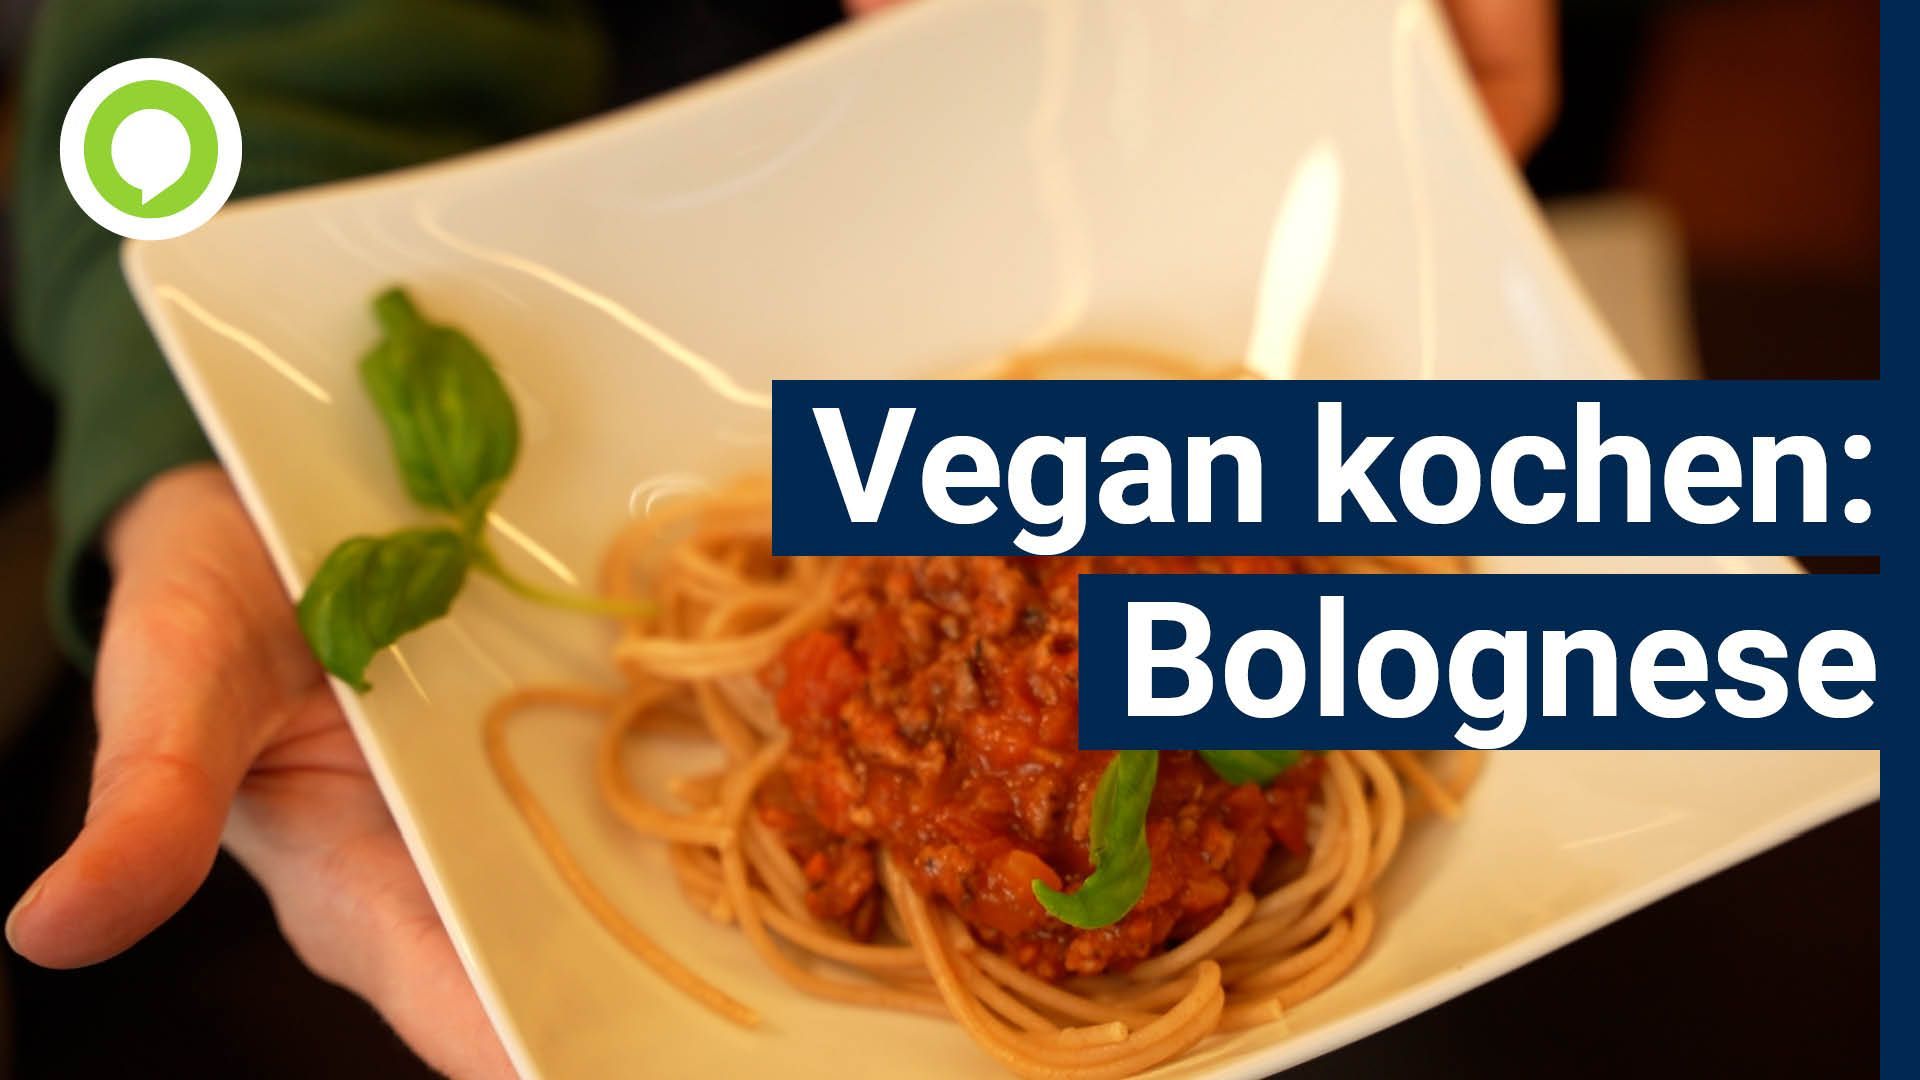 Kochen ohne tierische Produkte: So gelingt eine vegane Bolognese